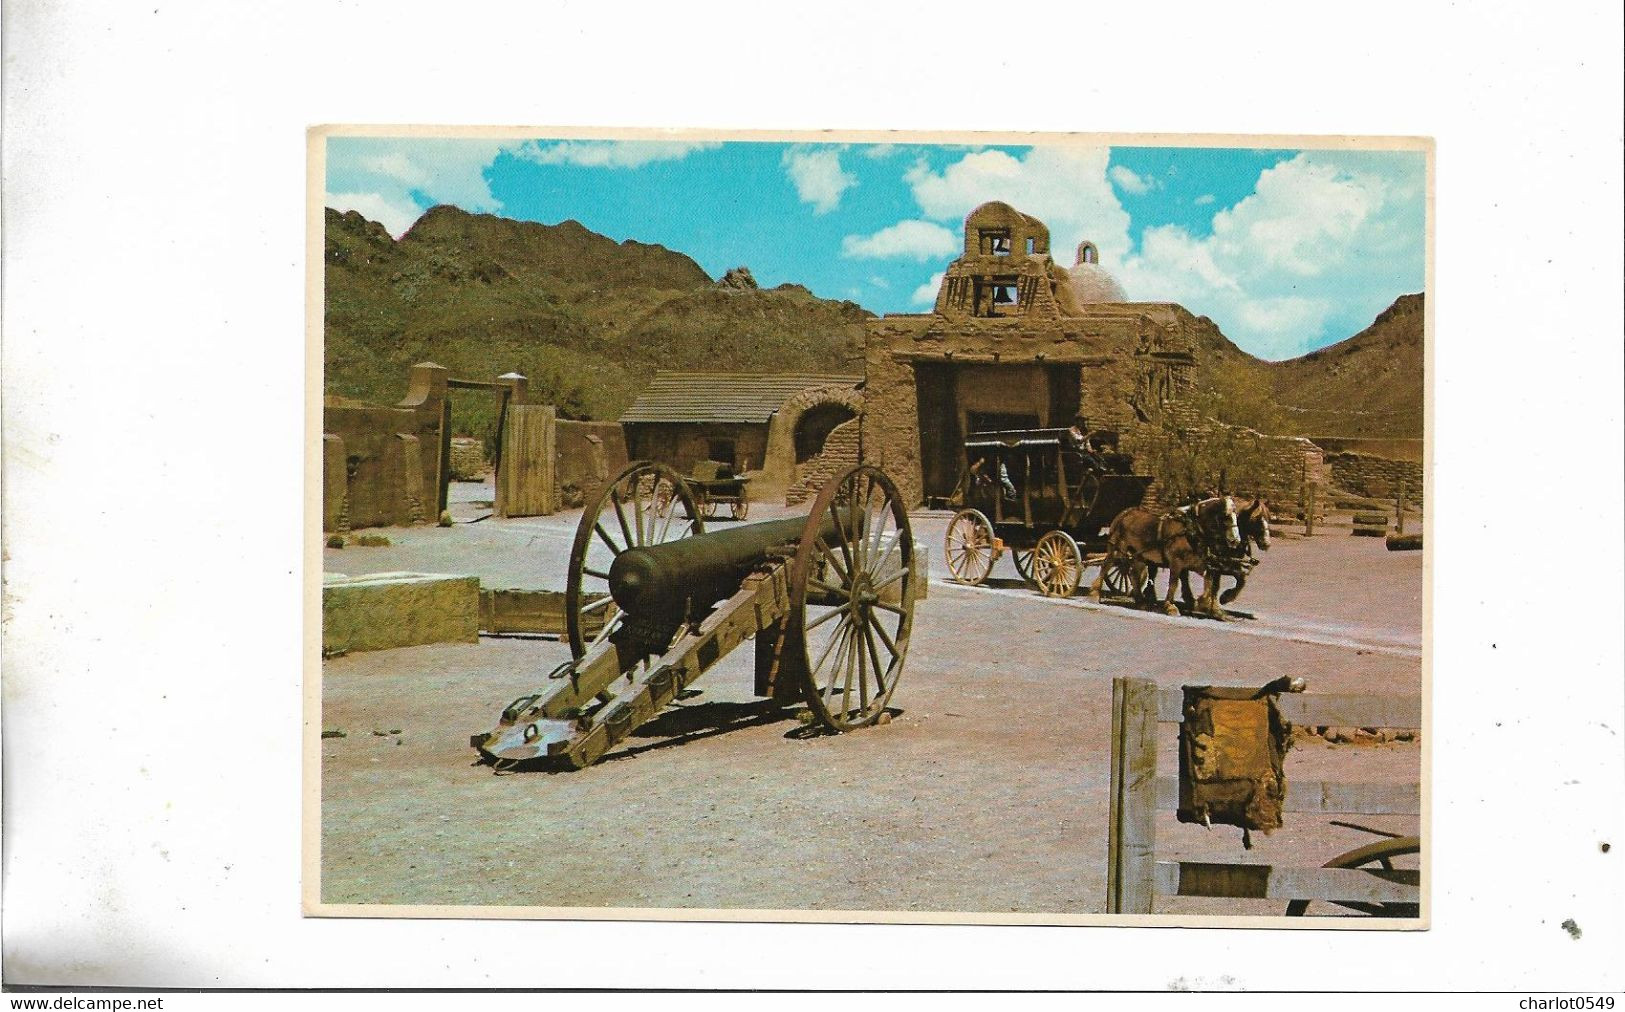 Old Tucson Arizona - Tucson